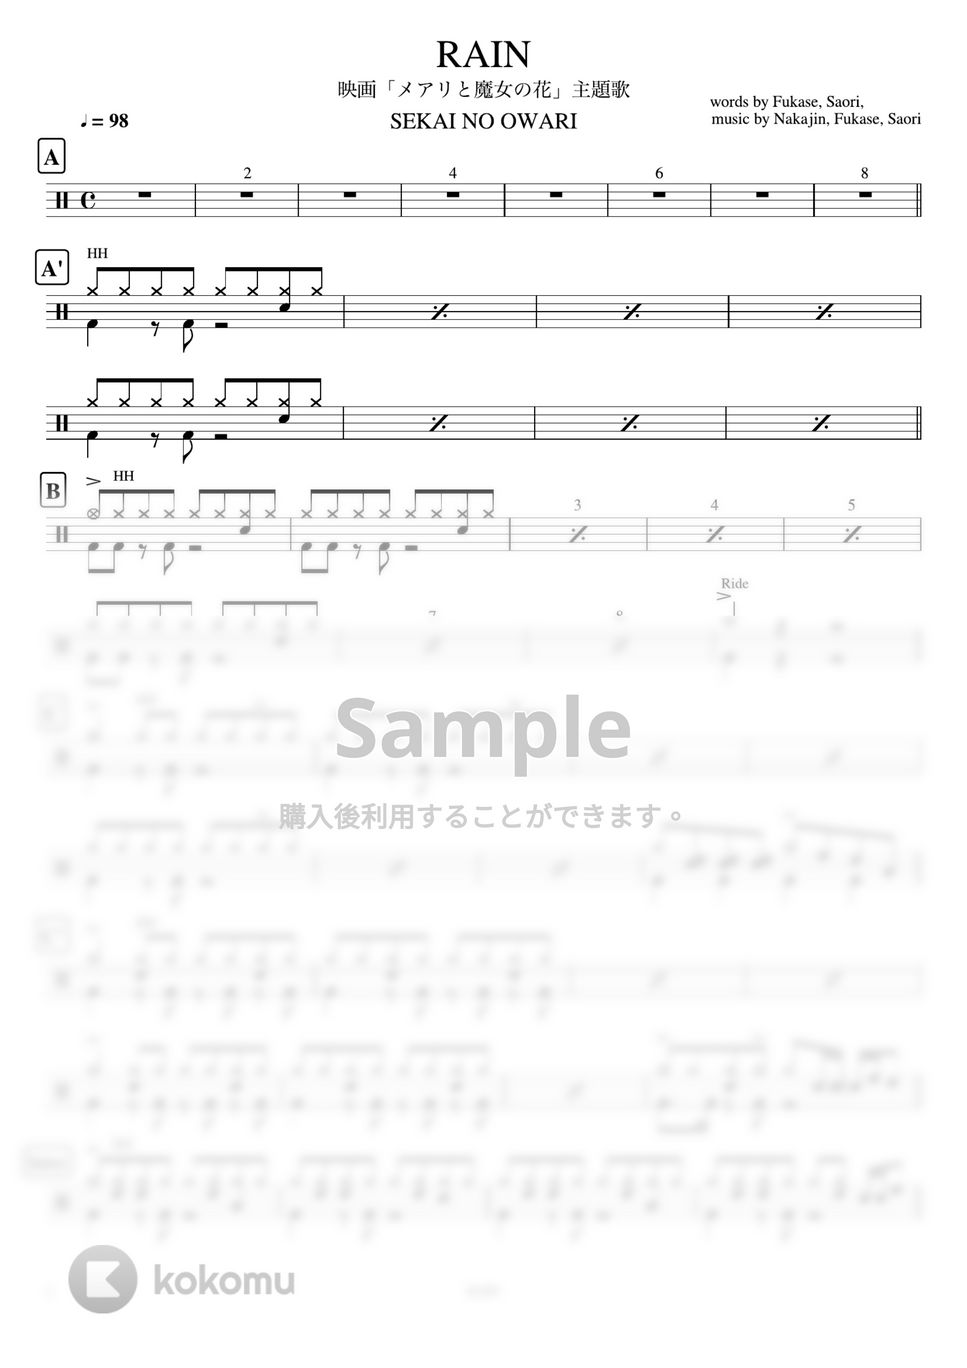 SEKAI NO OWARI - RAIN (映画「メアリと魔女の花」 主題歌) by ドラムが好き！